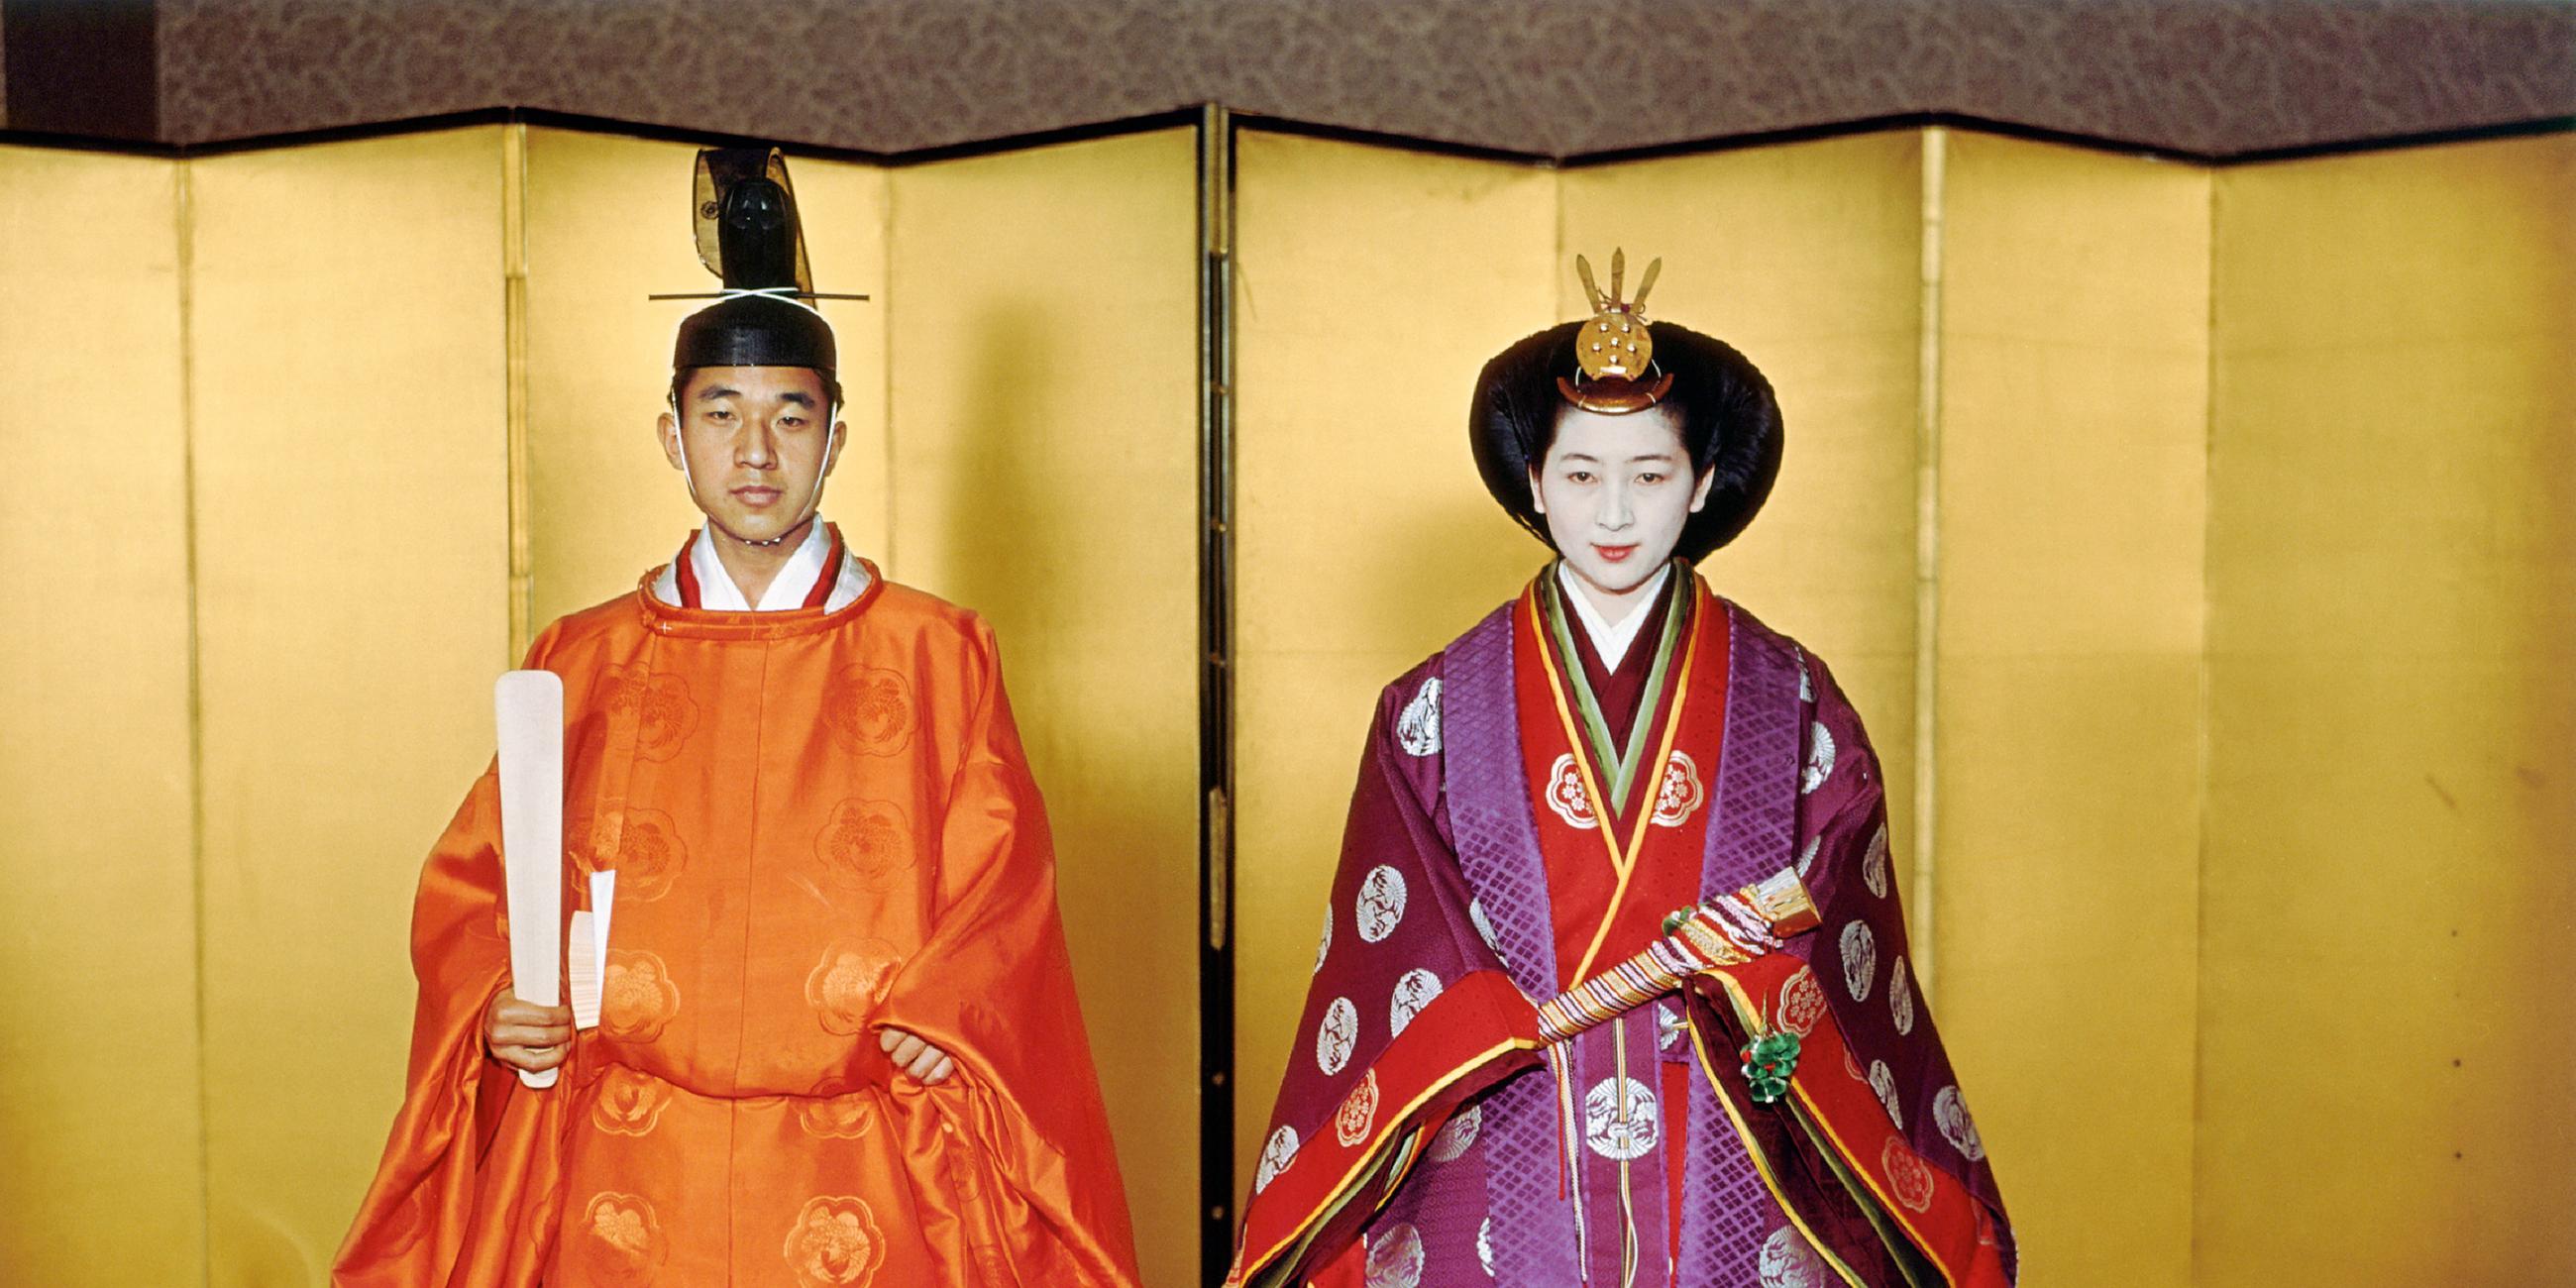 Kronprinz Akihito und Kronprinzessin Michiko nach der Hochzeitszeremonie im königlichen Palast (10.04.1959)